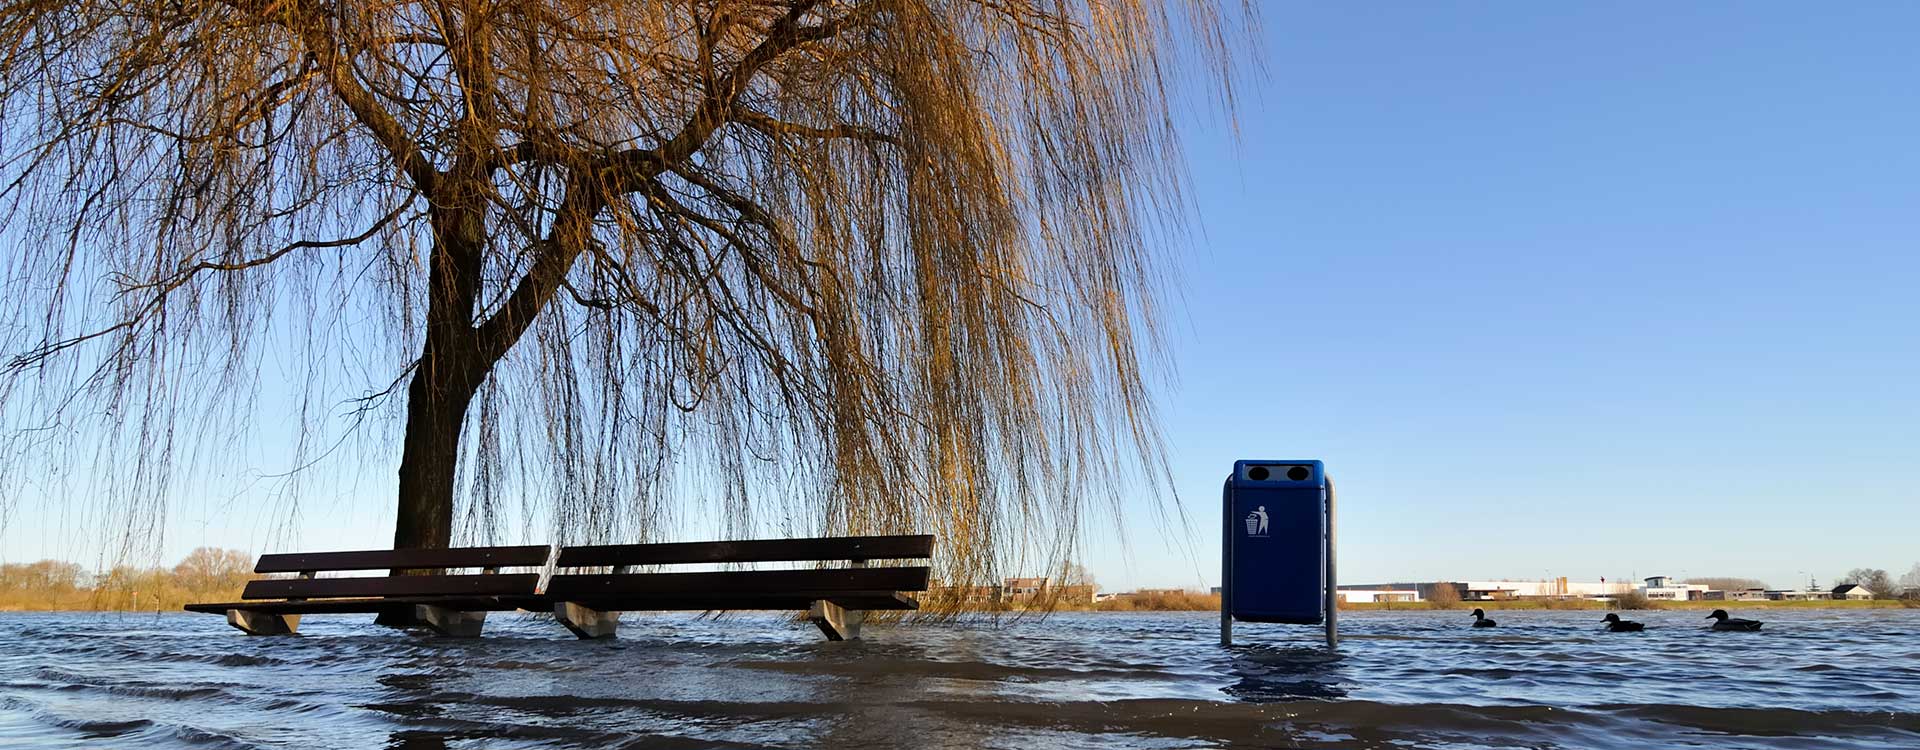 Träd, sopkorg och parkbänk ser ut att stick upp ur en sjö på grund av översvämning.